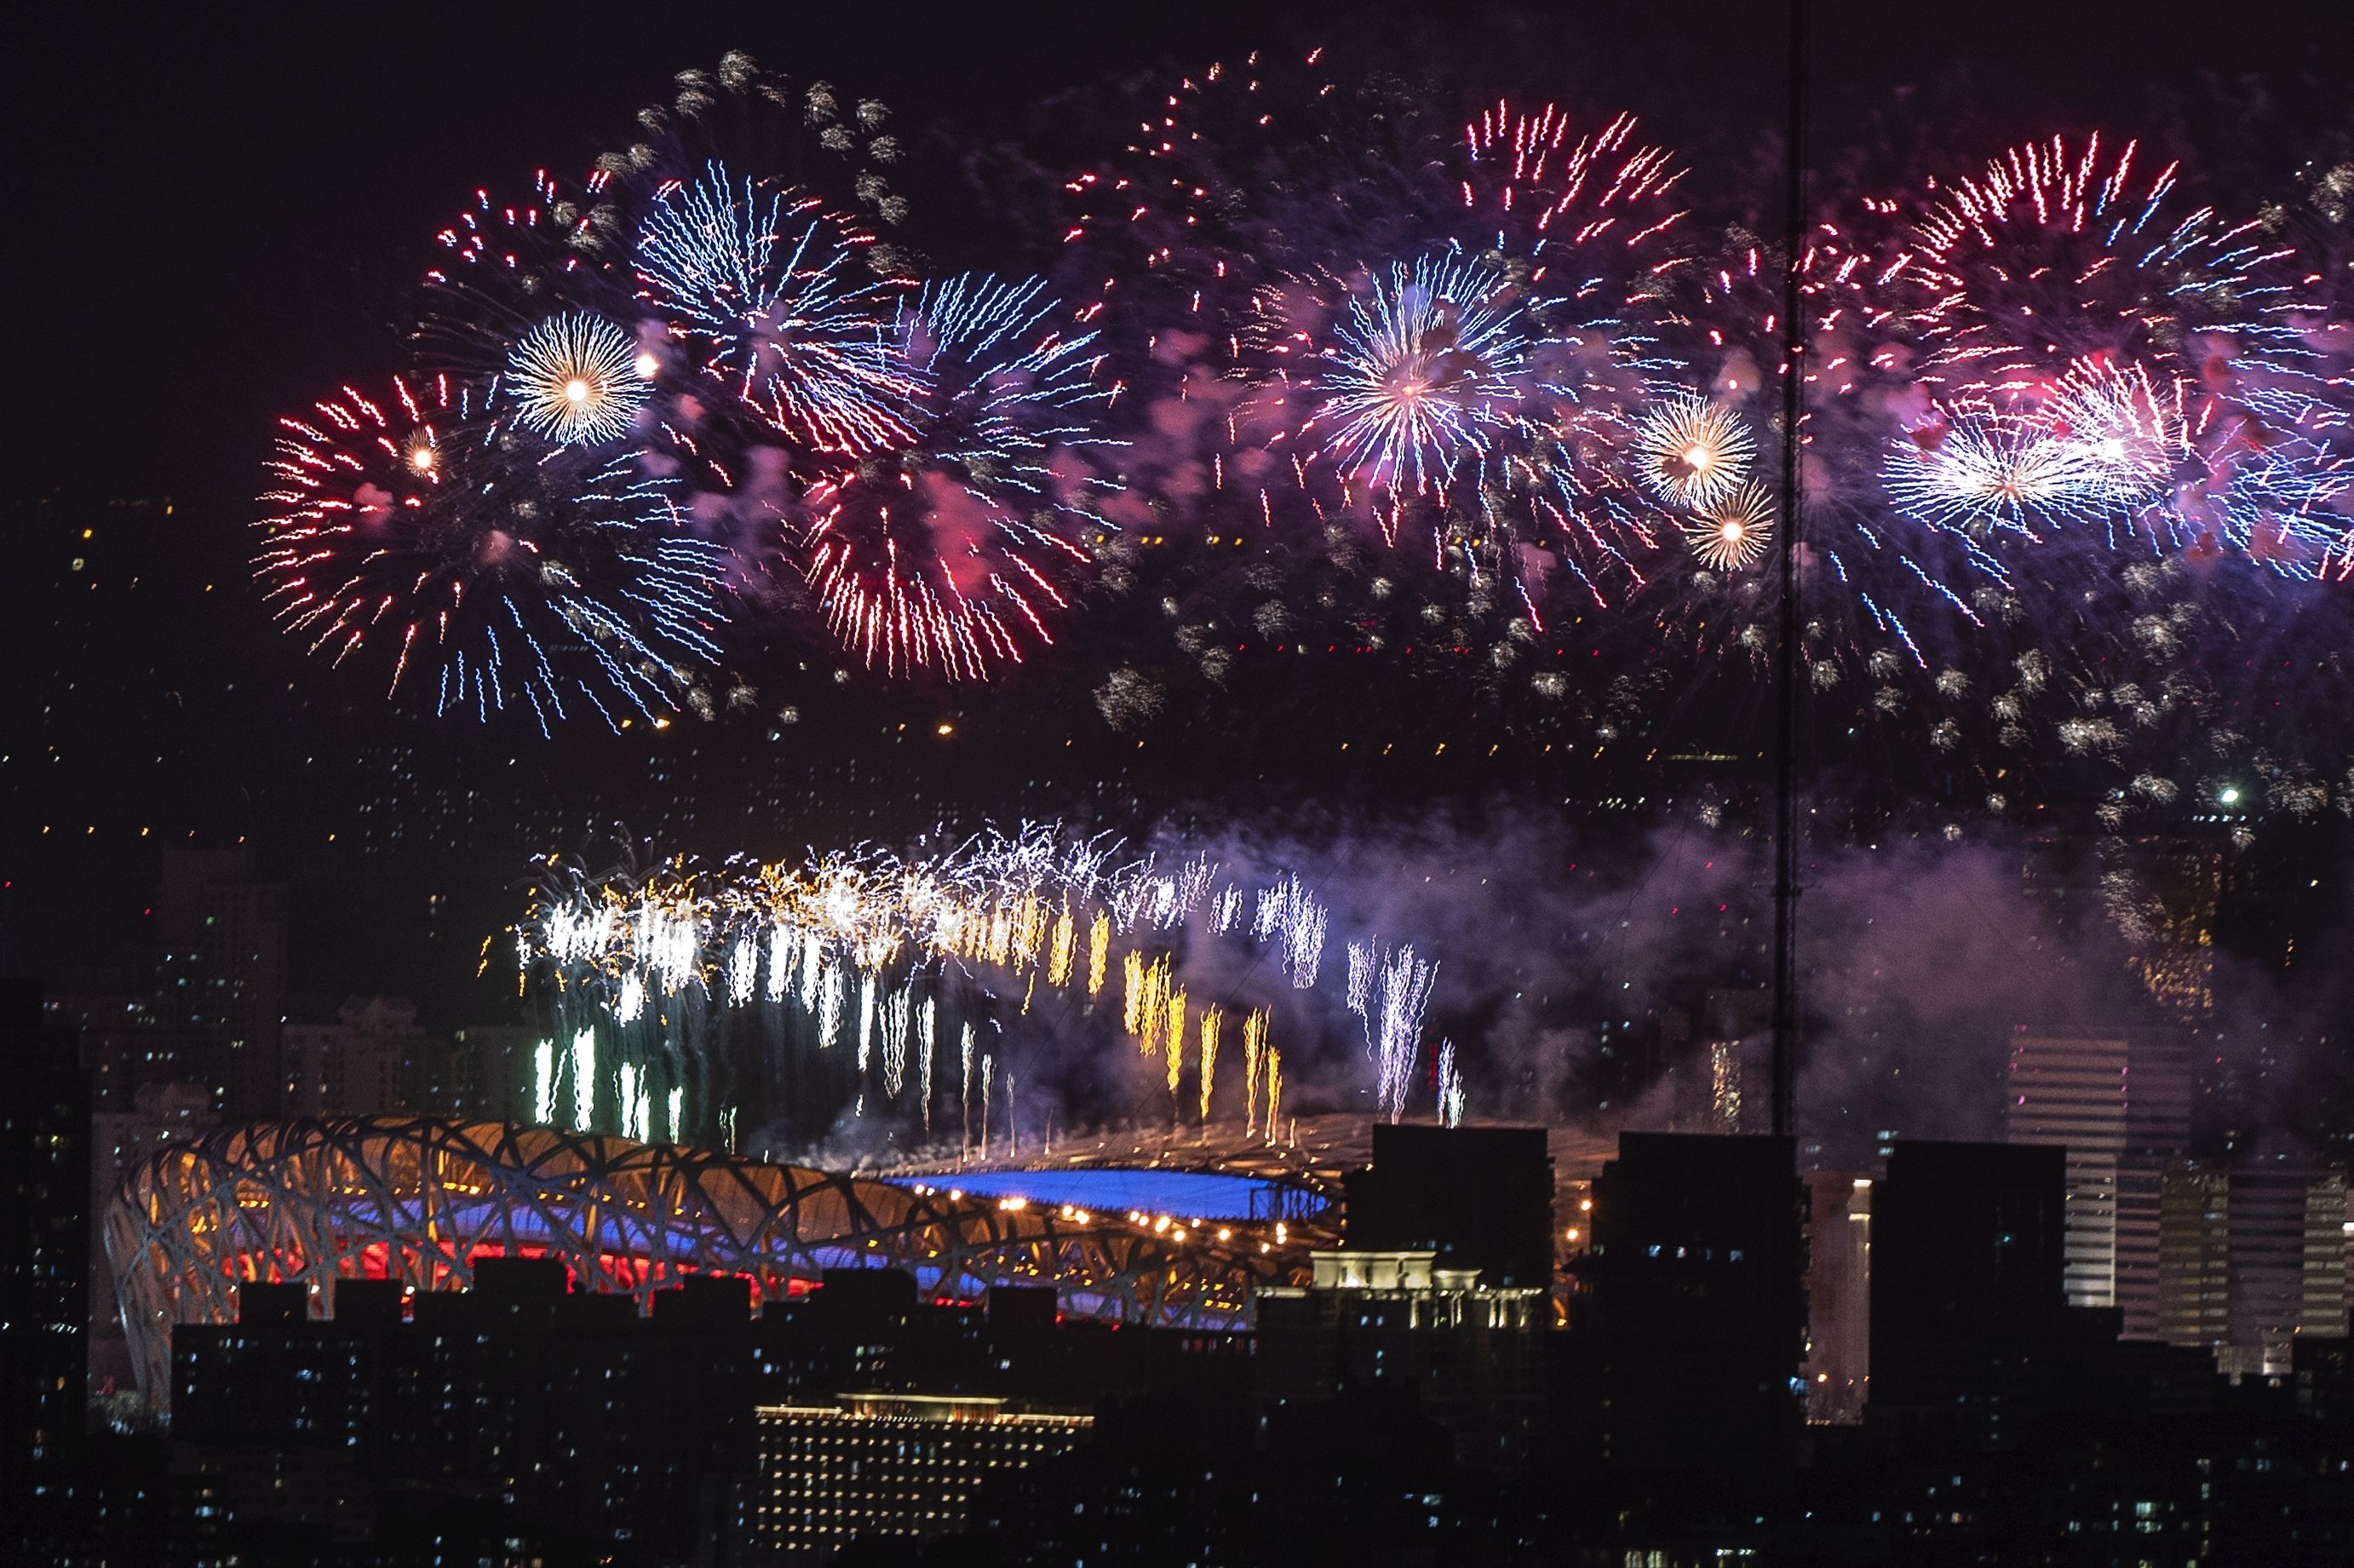 Fireworks explode over the Beijing National Stadium